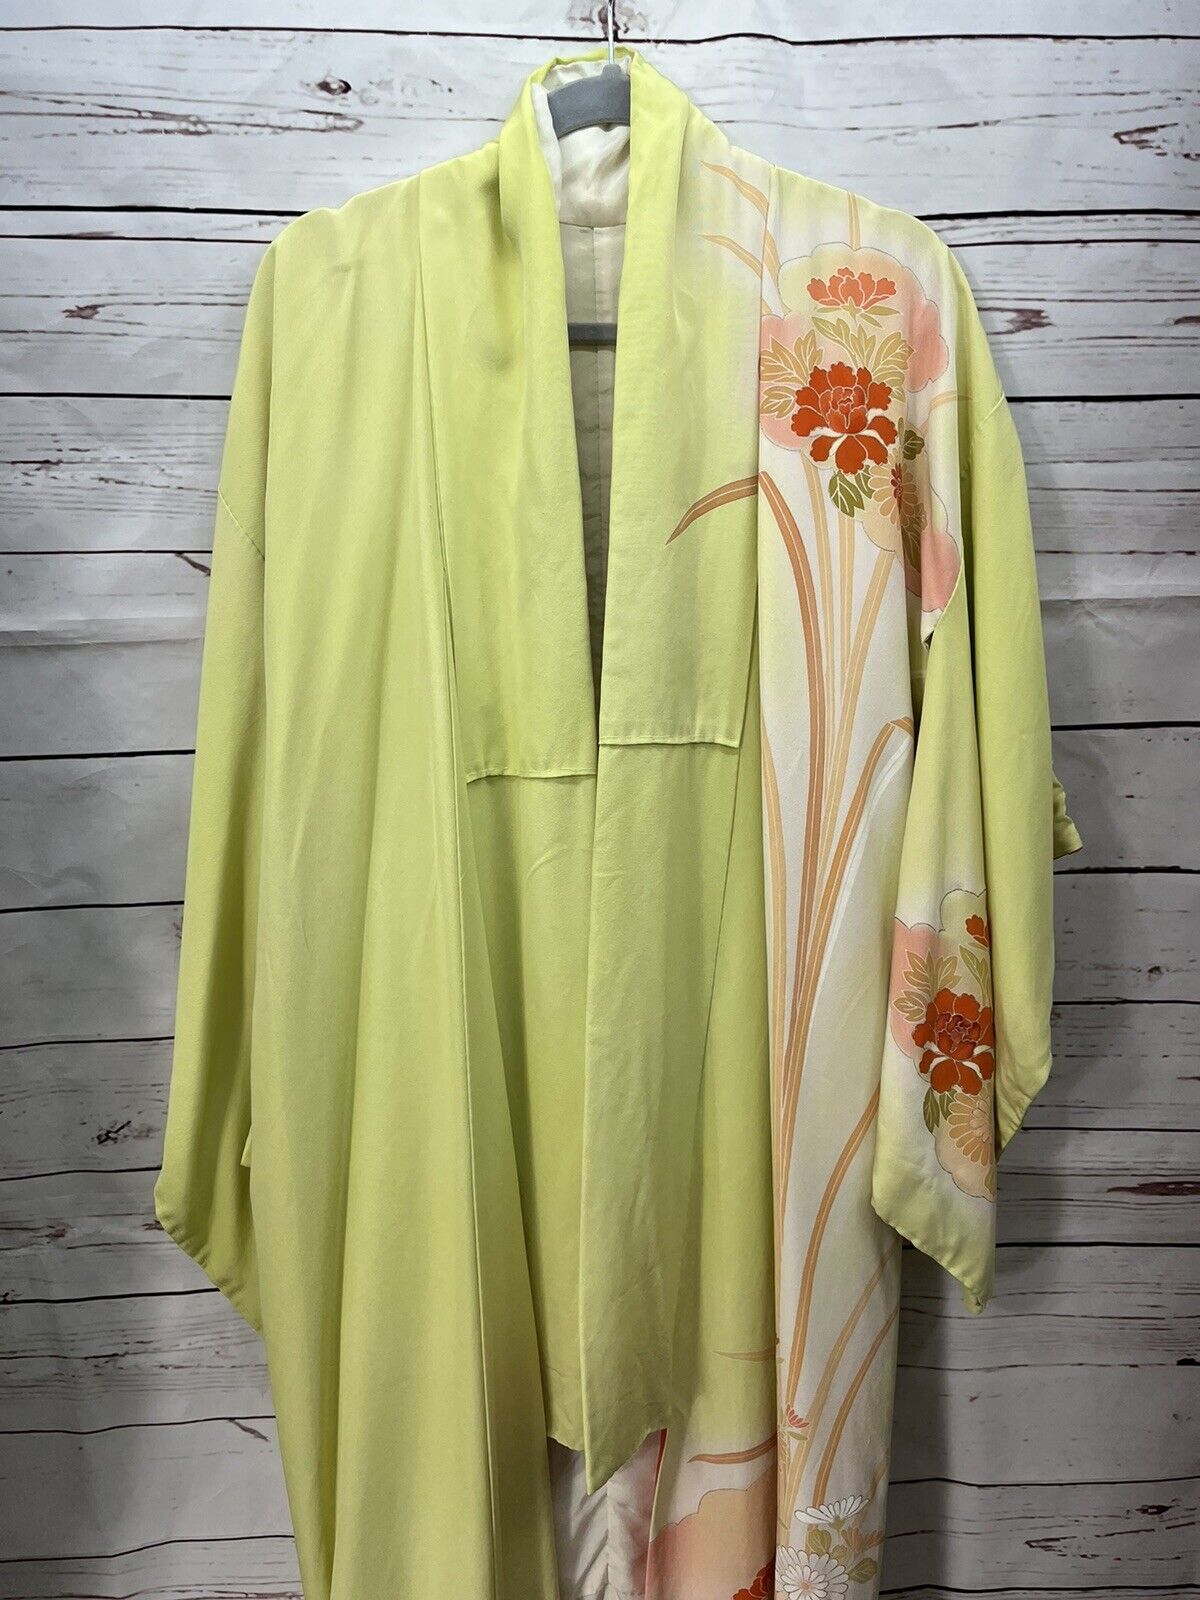 Vintage Silk Kimono Floral Painted Design Yellow Orange Lovely